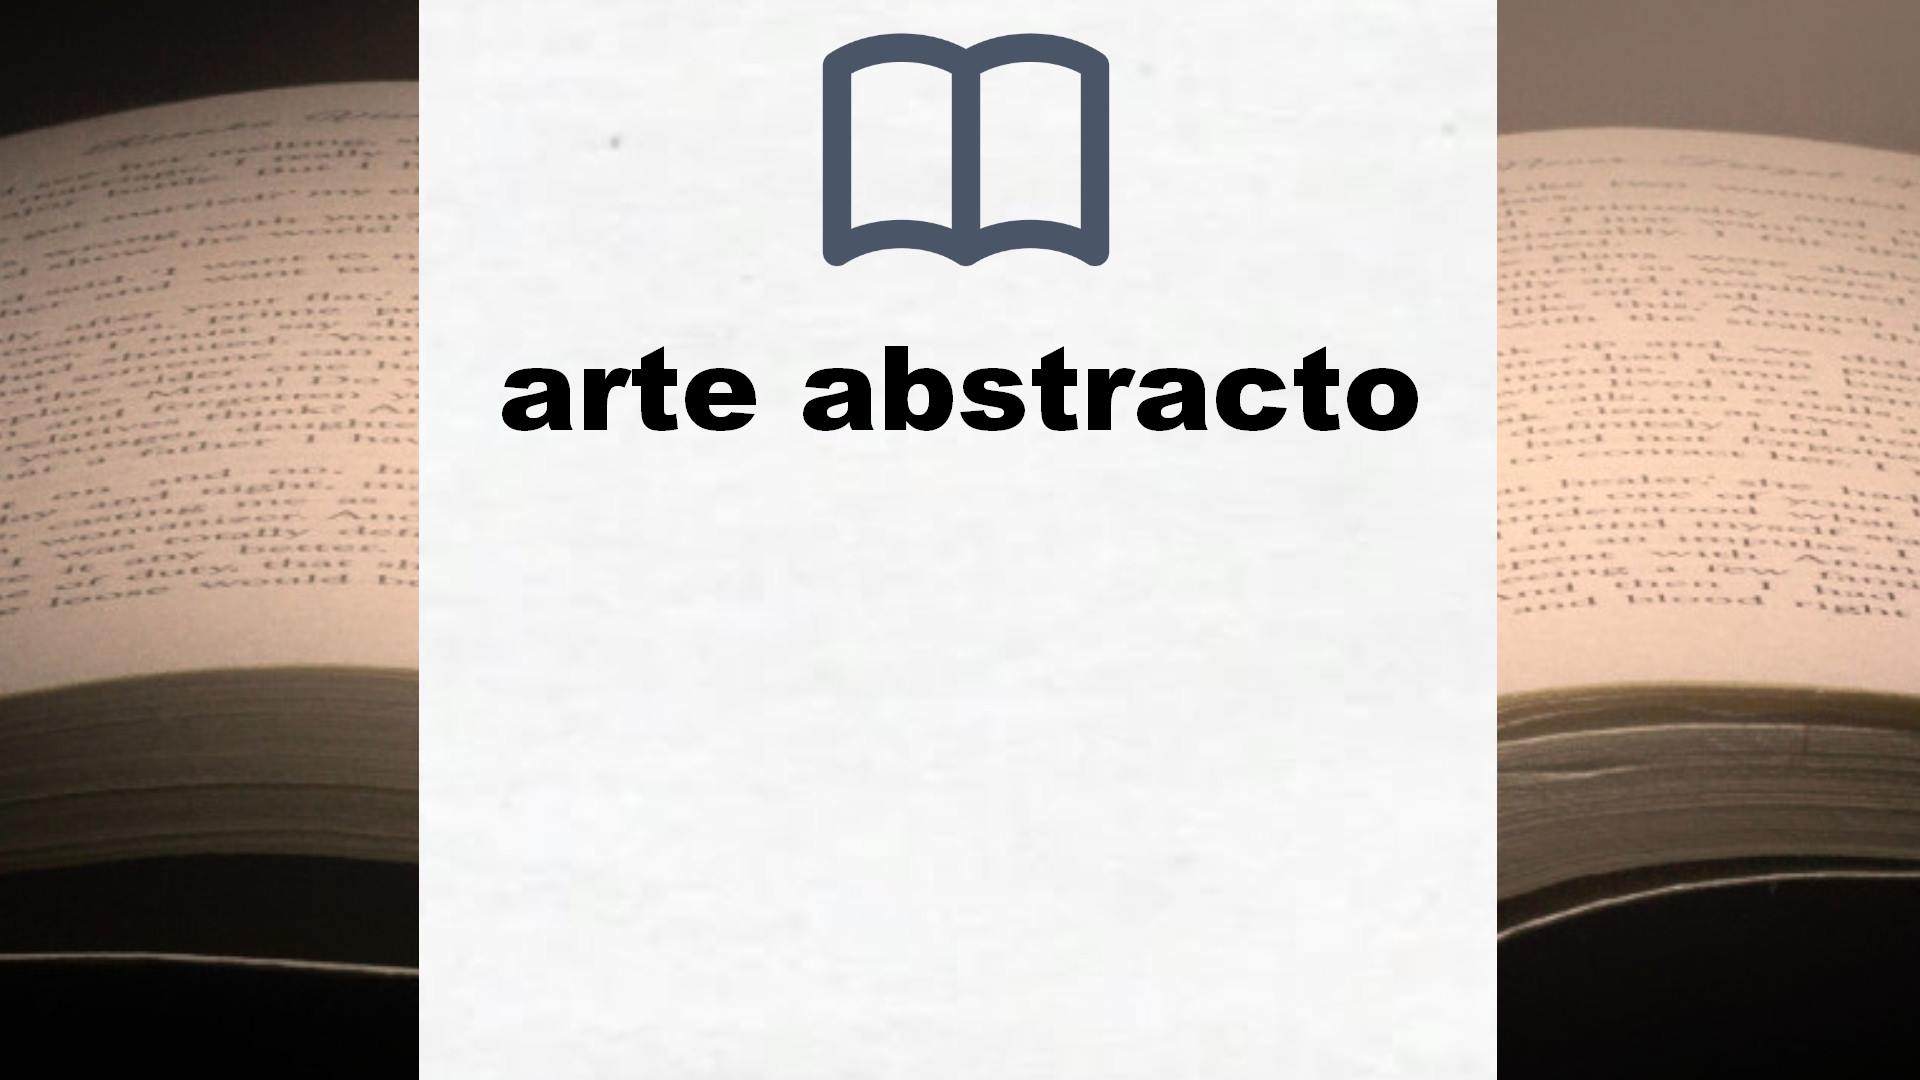 Libros sobre arte abstracto